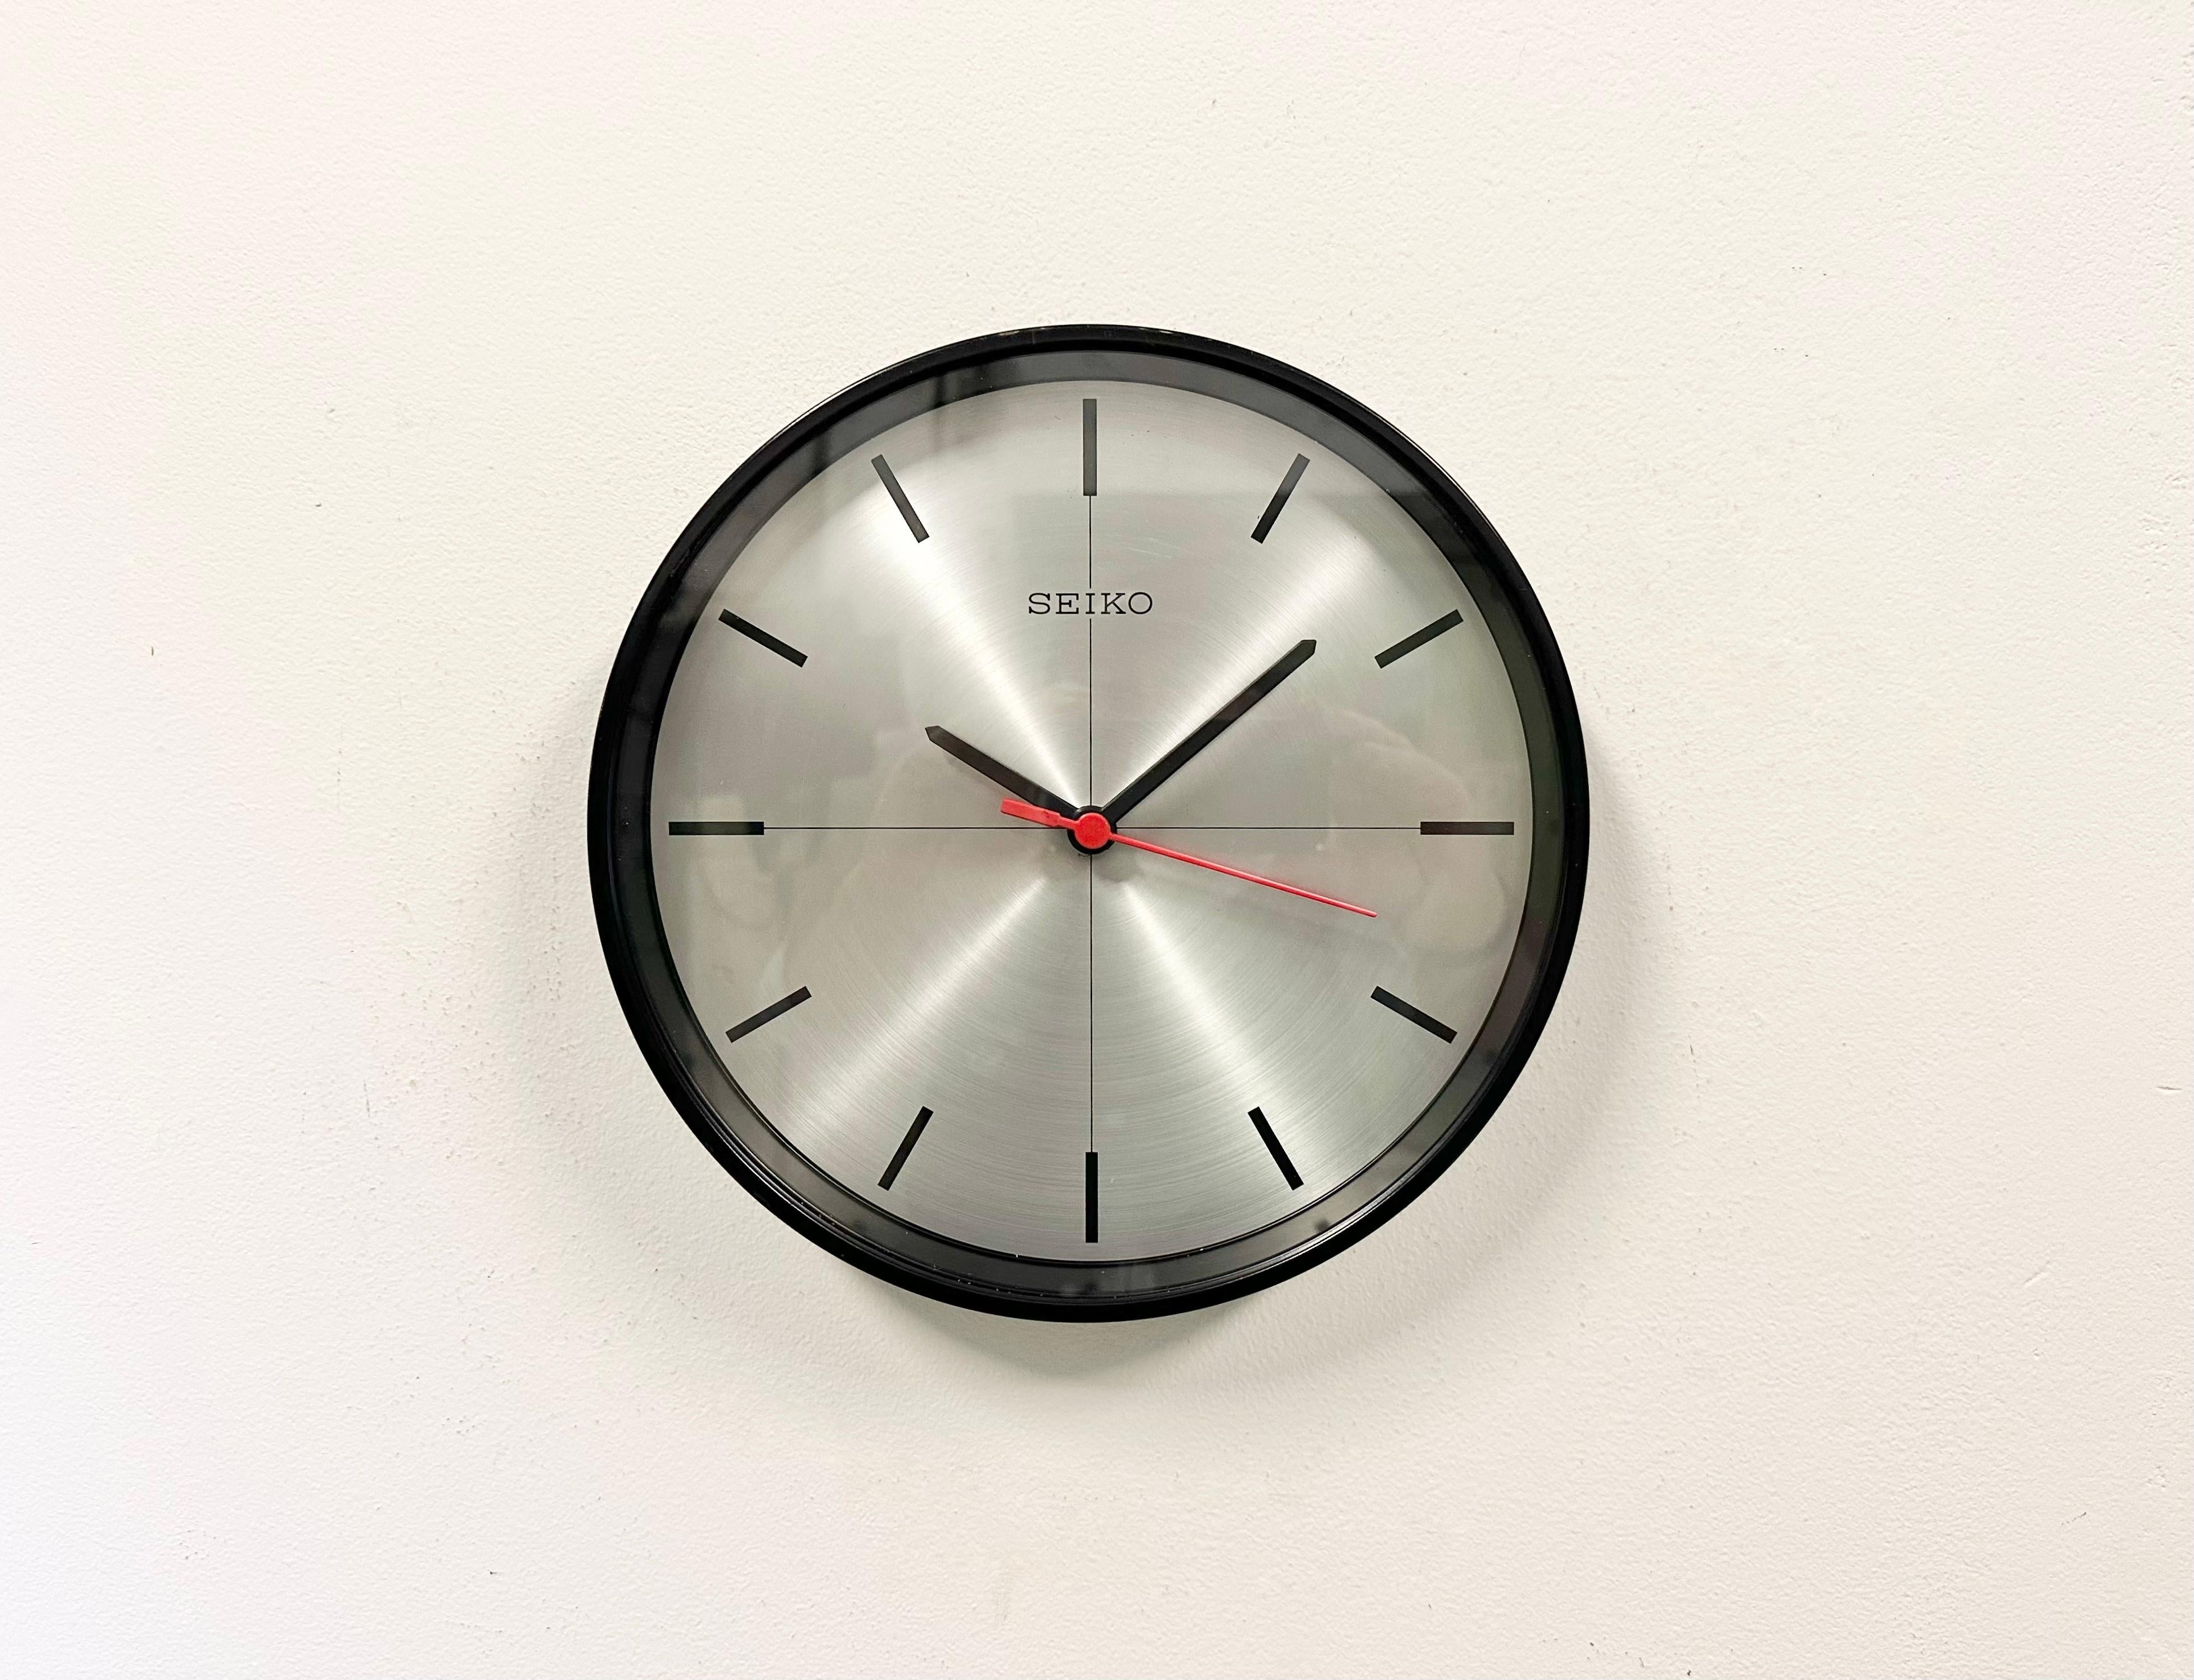 Horloge vintage Seiko pour esclaves de la marine, conçue et produite au Japon dans les années 1990. Ces horloges étaient utilisées sur les grands pétroliers et cargos japonais. Il se compose d'un cadre en métal noir, d'un cadran en métal argenté et